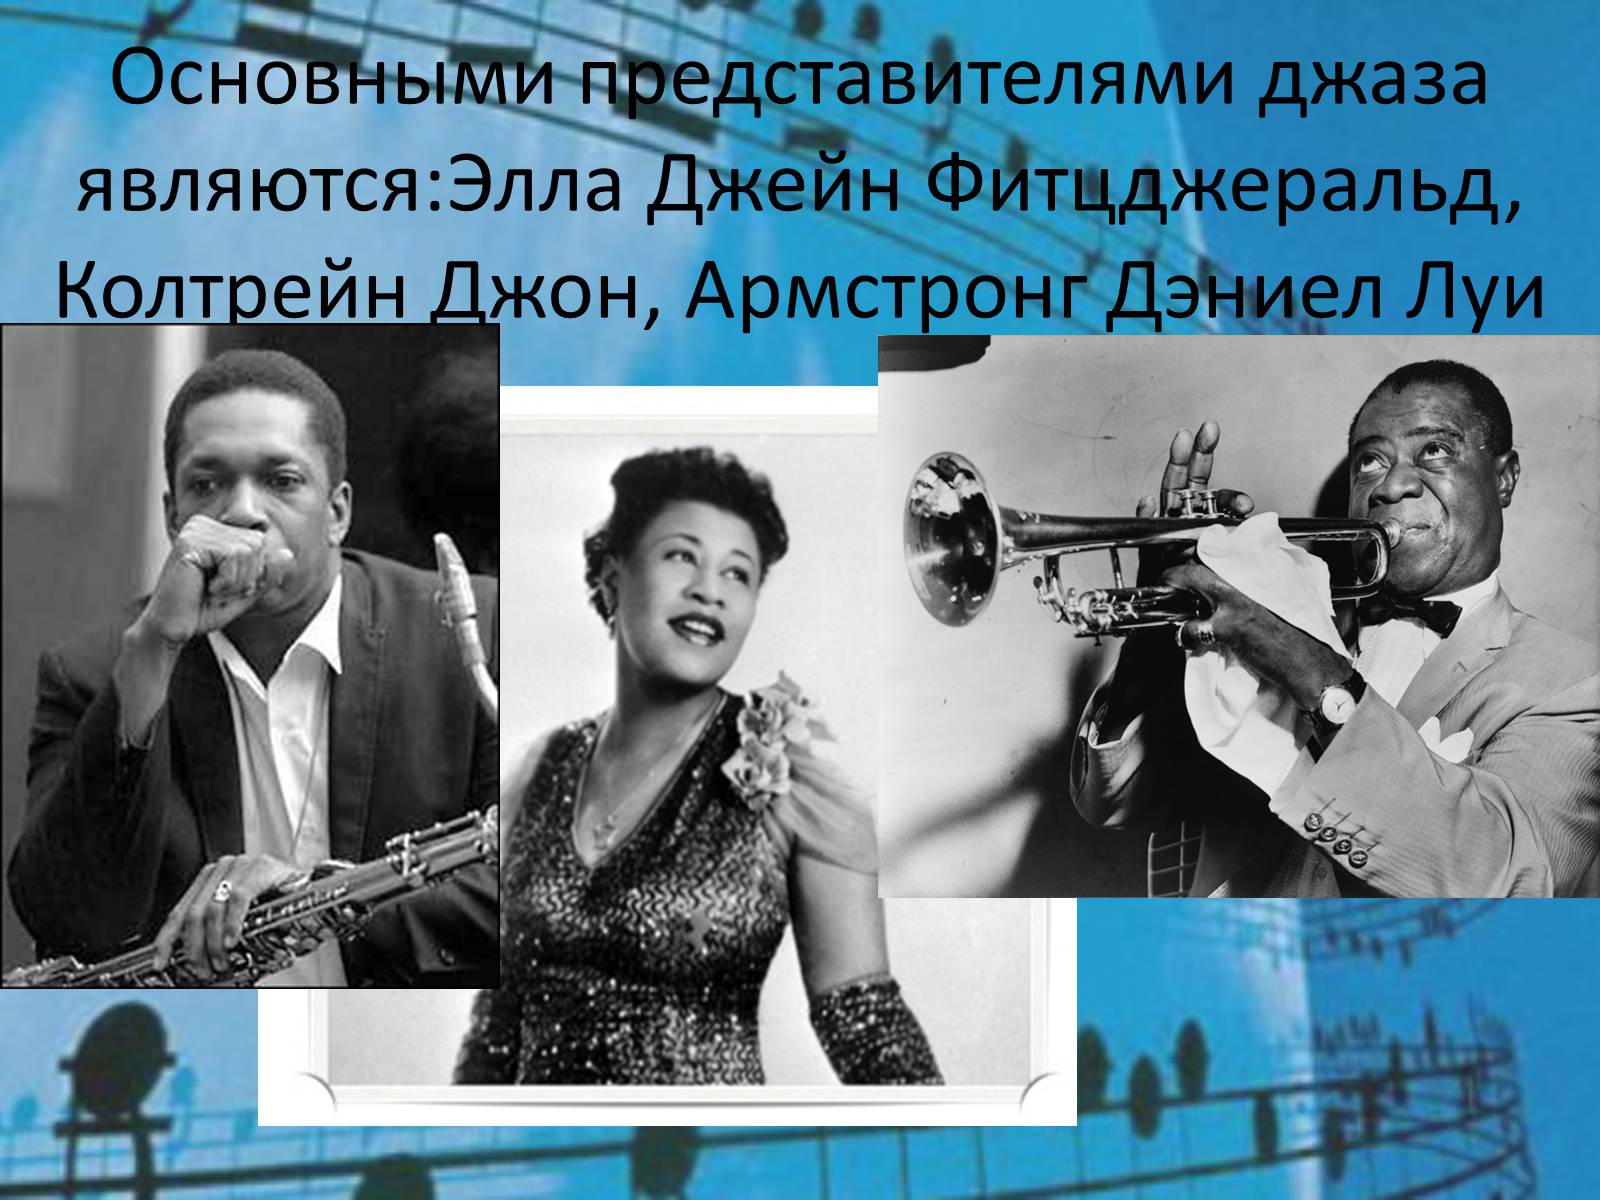 Родиной джаза является. Представители джаза. Джаз основные представители. Луи Дэниел Армстронг. Самые популярные представители джаза в России.